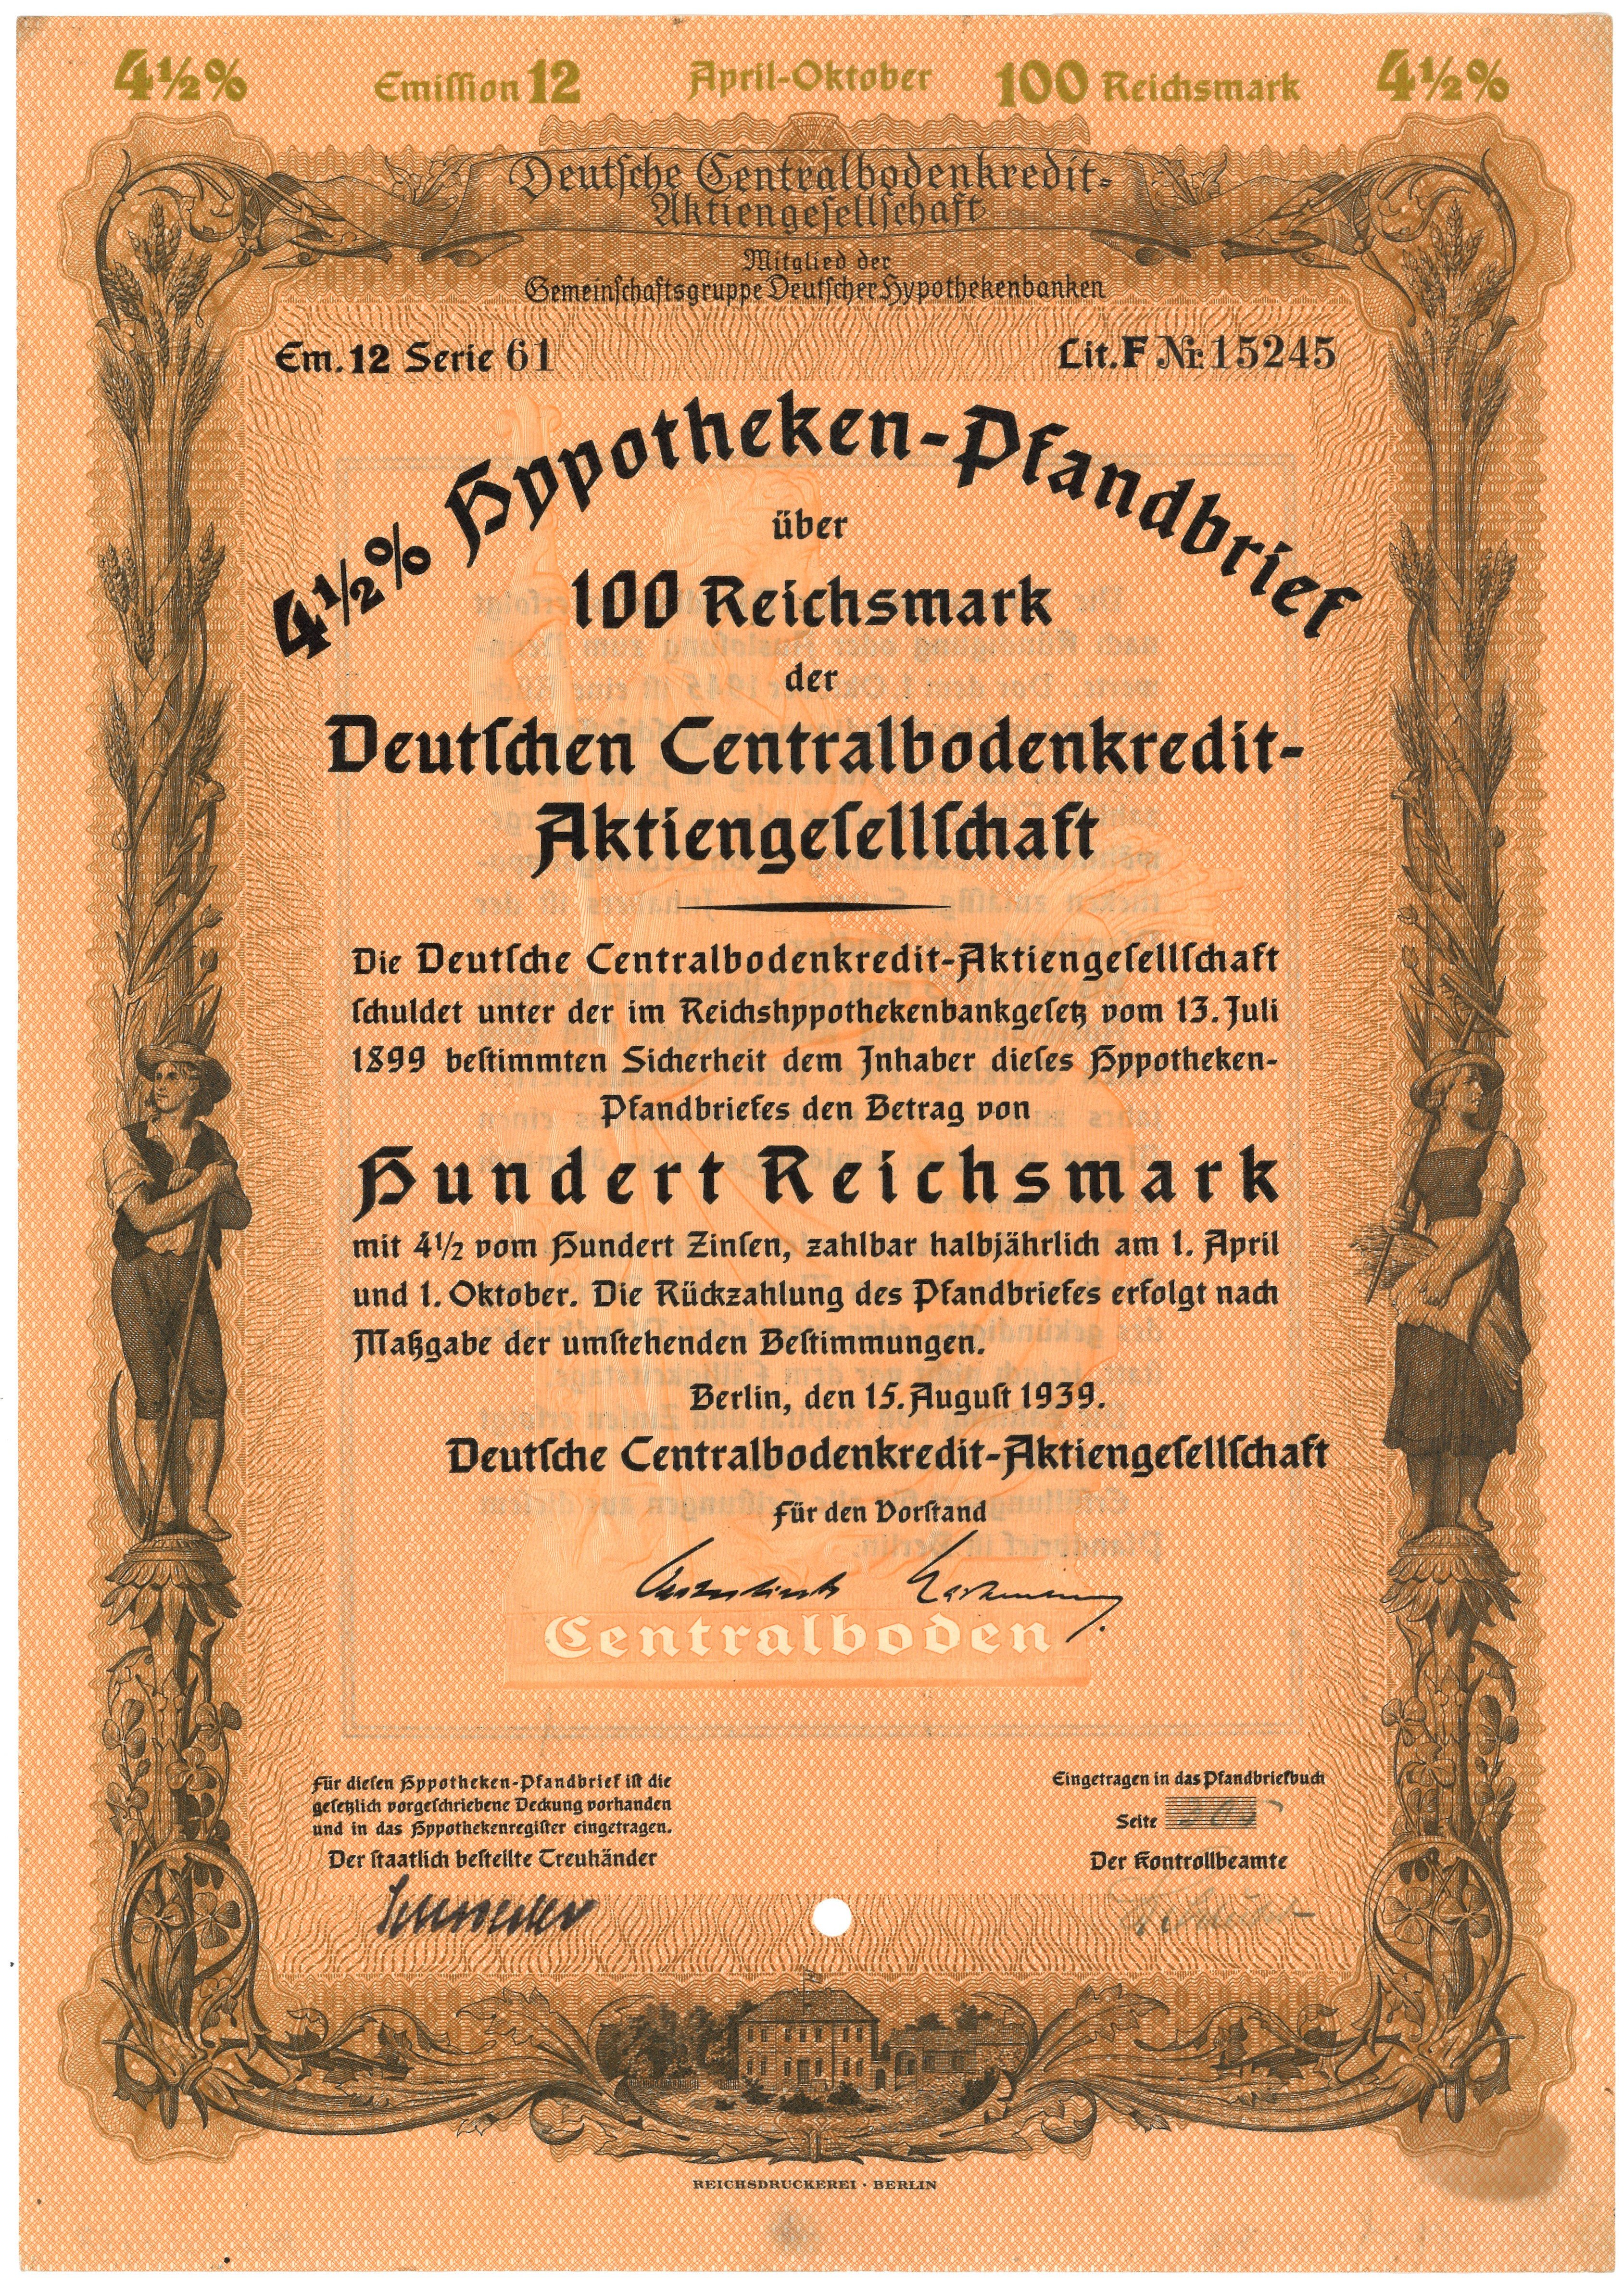 Hypotheken-Pfandbrief der Deutschen Centralbodenkredit-AG in Berlin (1939) (Landesgeschichtliche Vereinigung für die Mark Brandenburg e.V. CC BY)